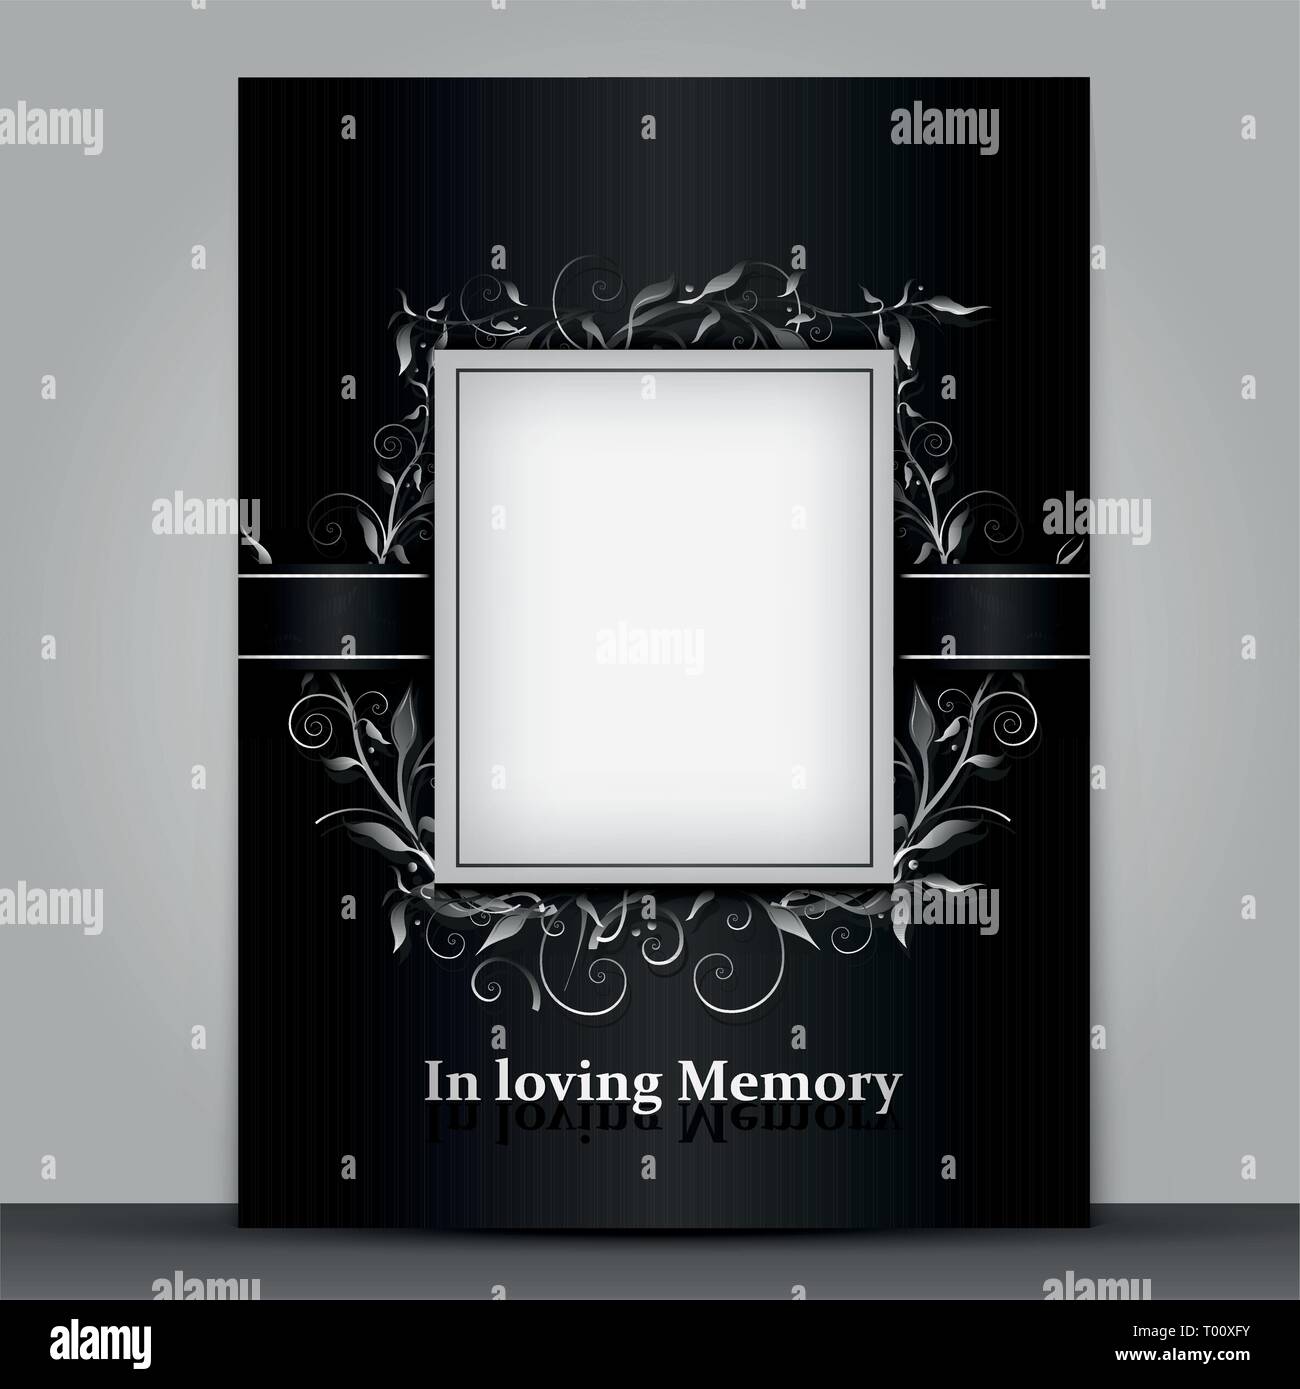 Trauer Card standard Größe mit Bilderrahmen auf grauem Hintergrund  Stock-Vektorgrafik - Alamy